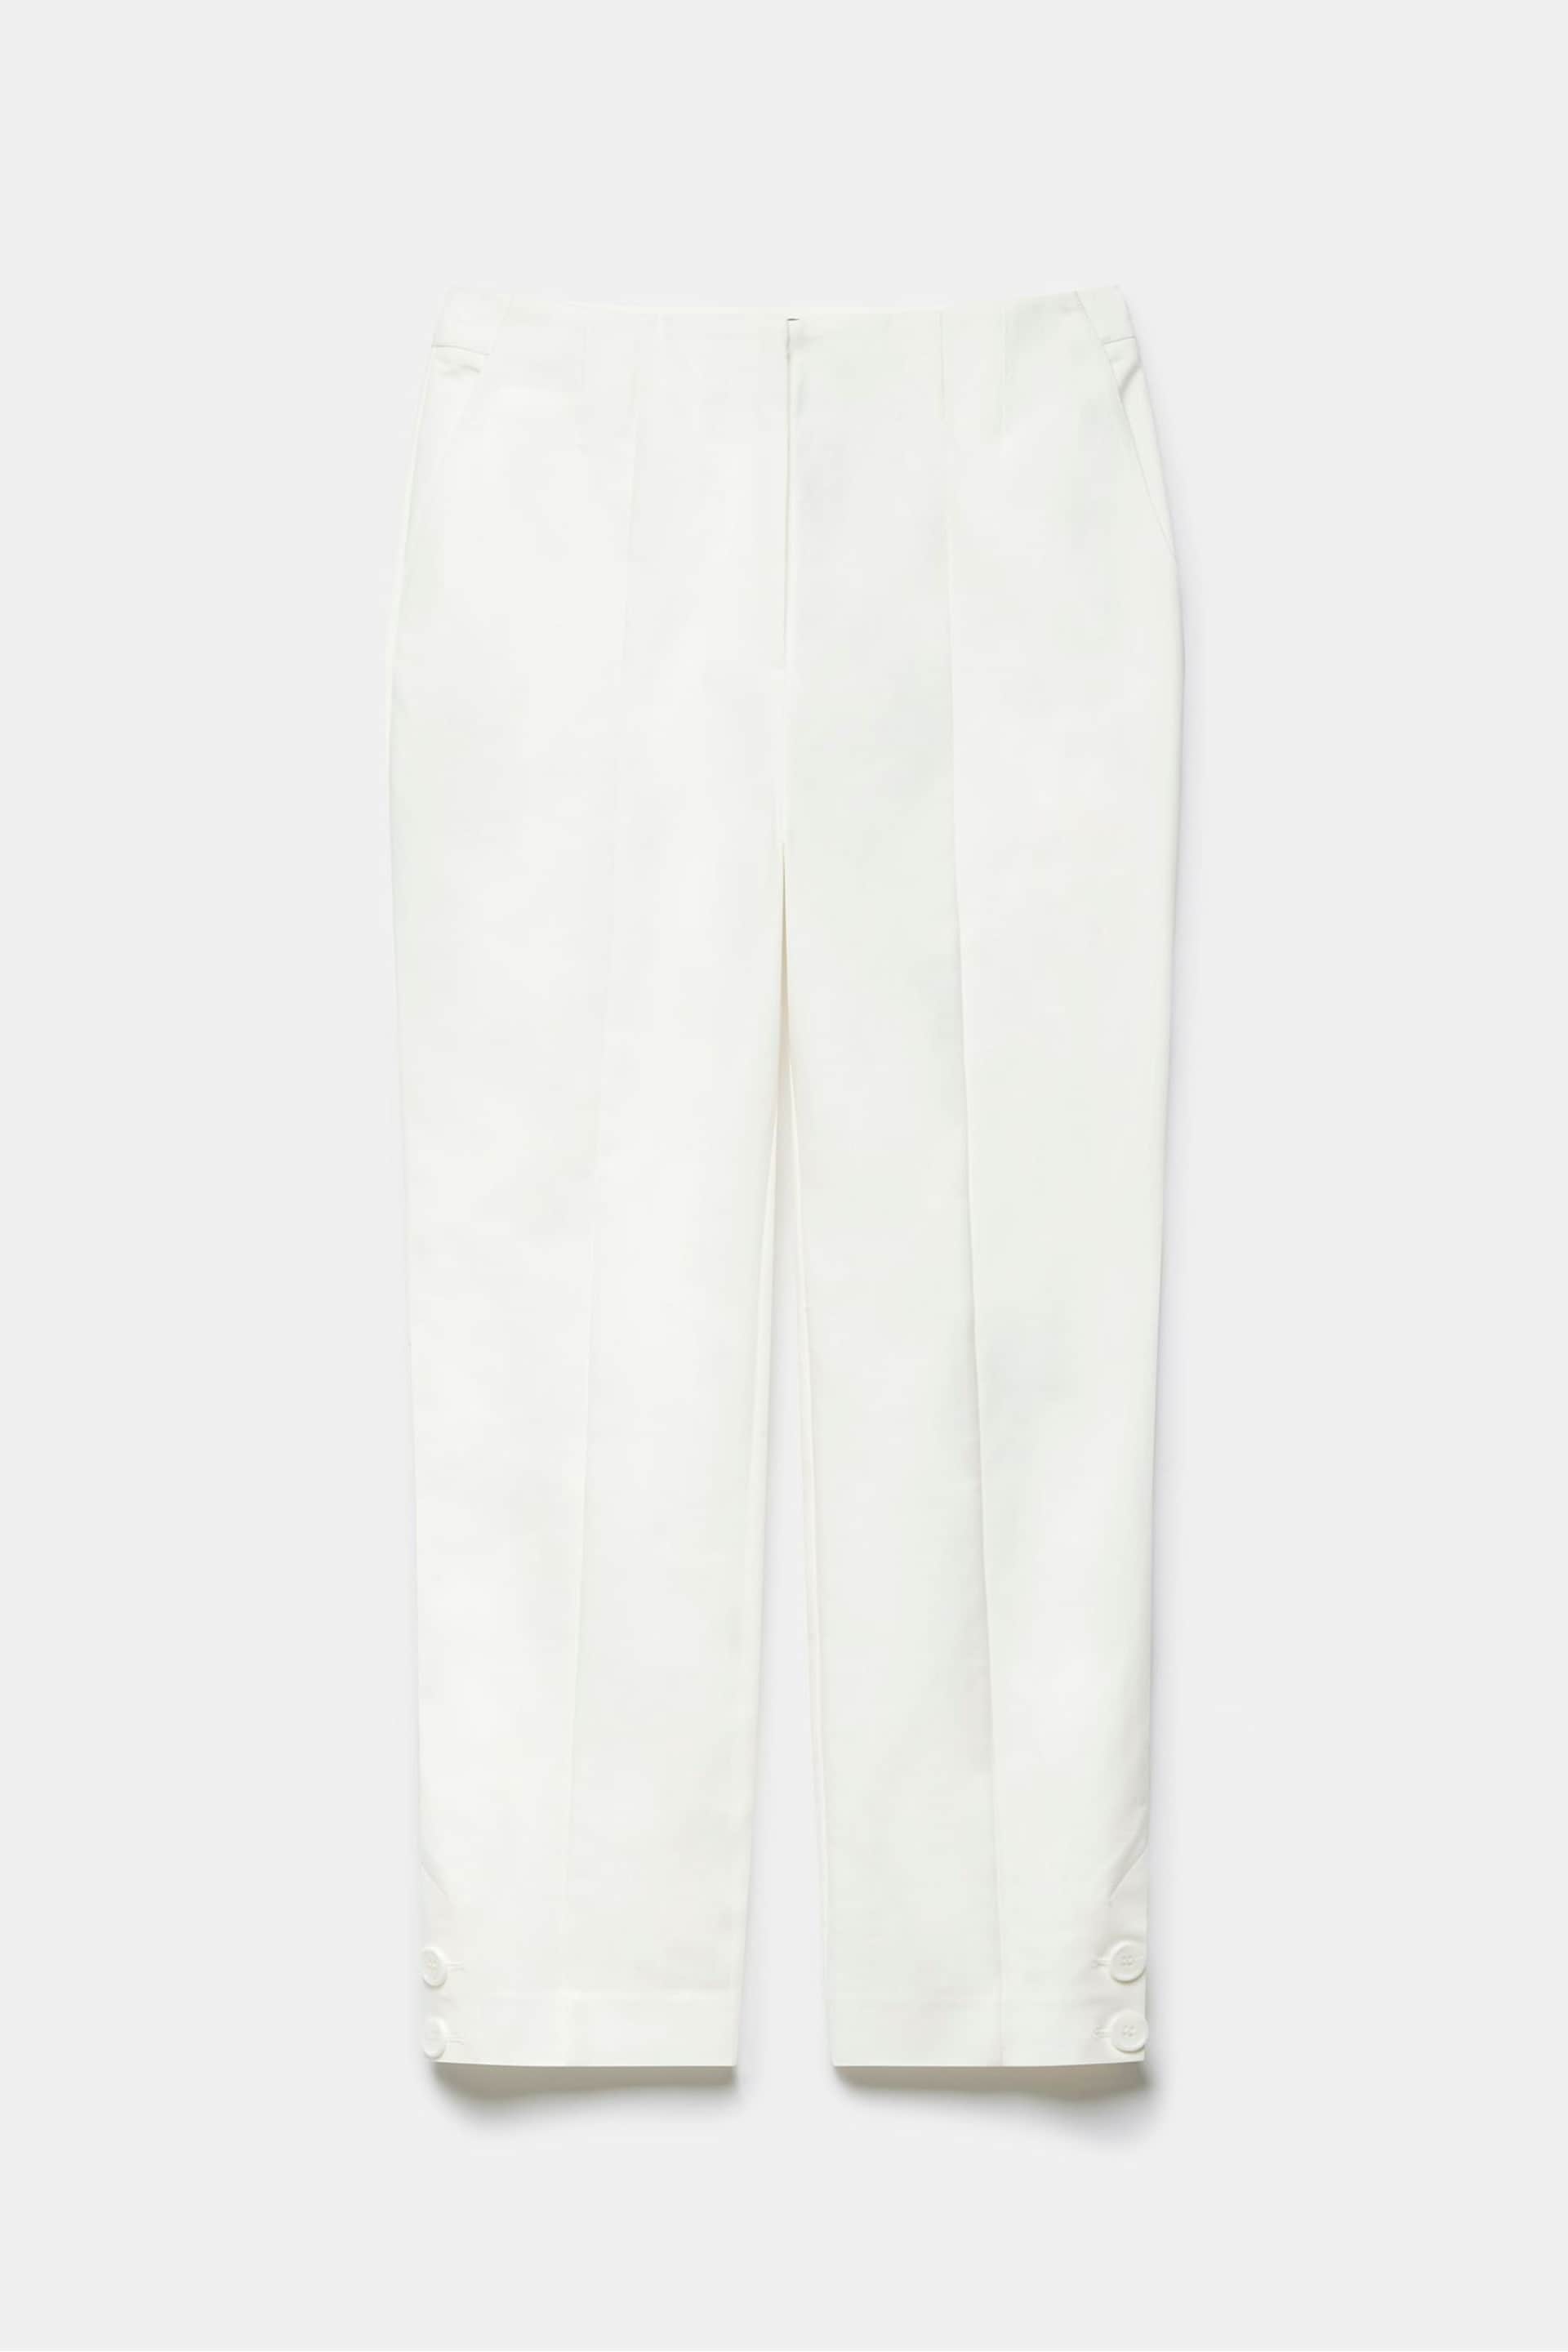 Mint Velvet White Slim Capri Trousers - Image 3 of 4